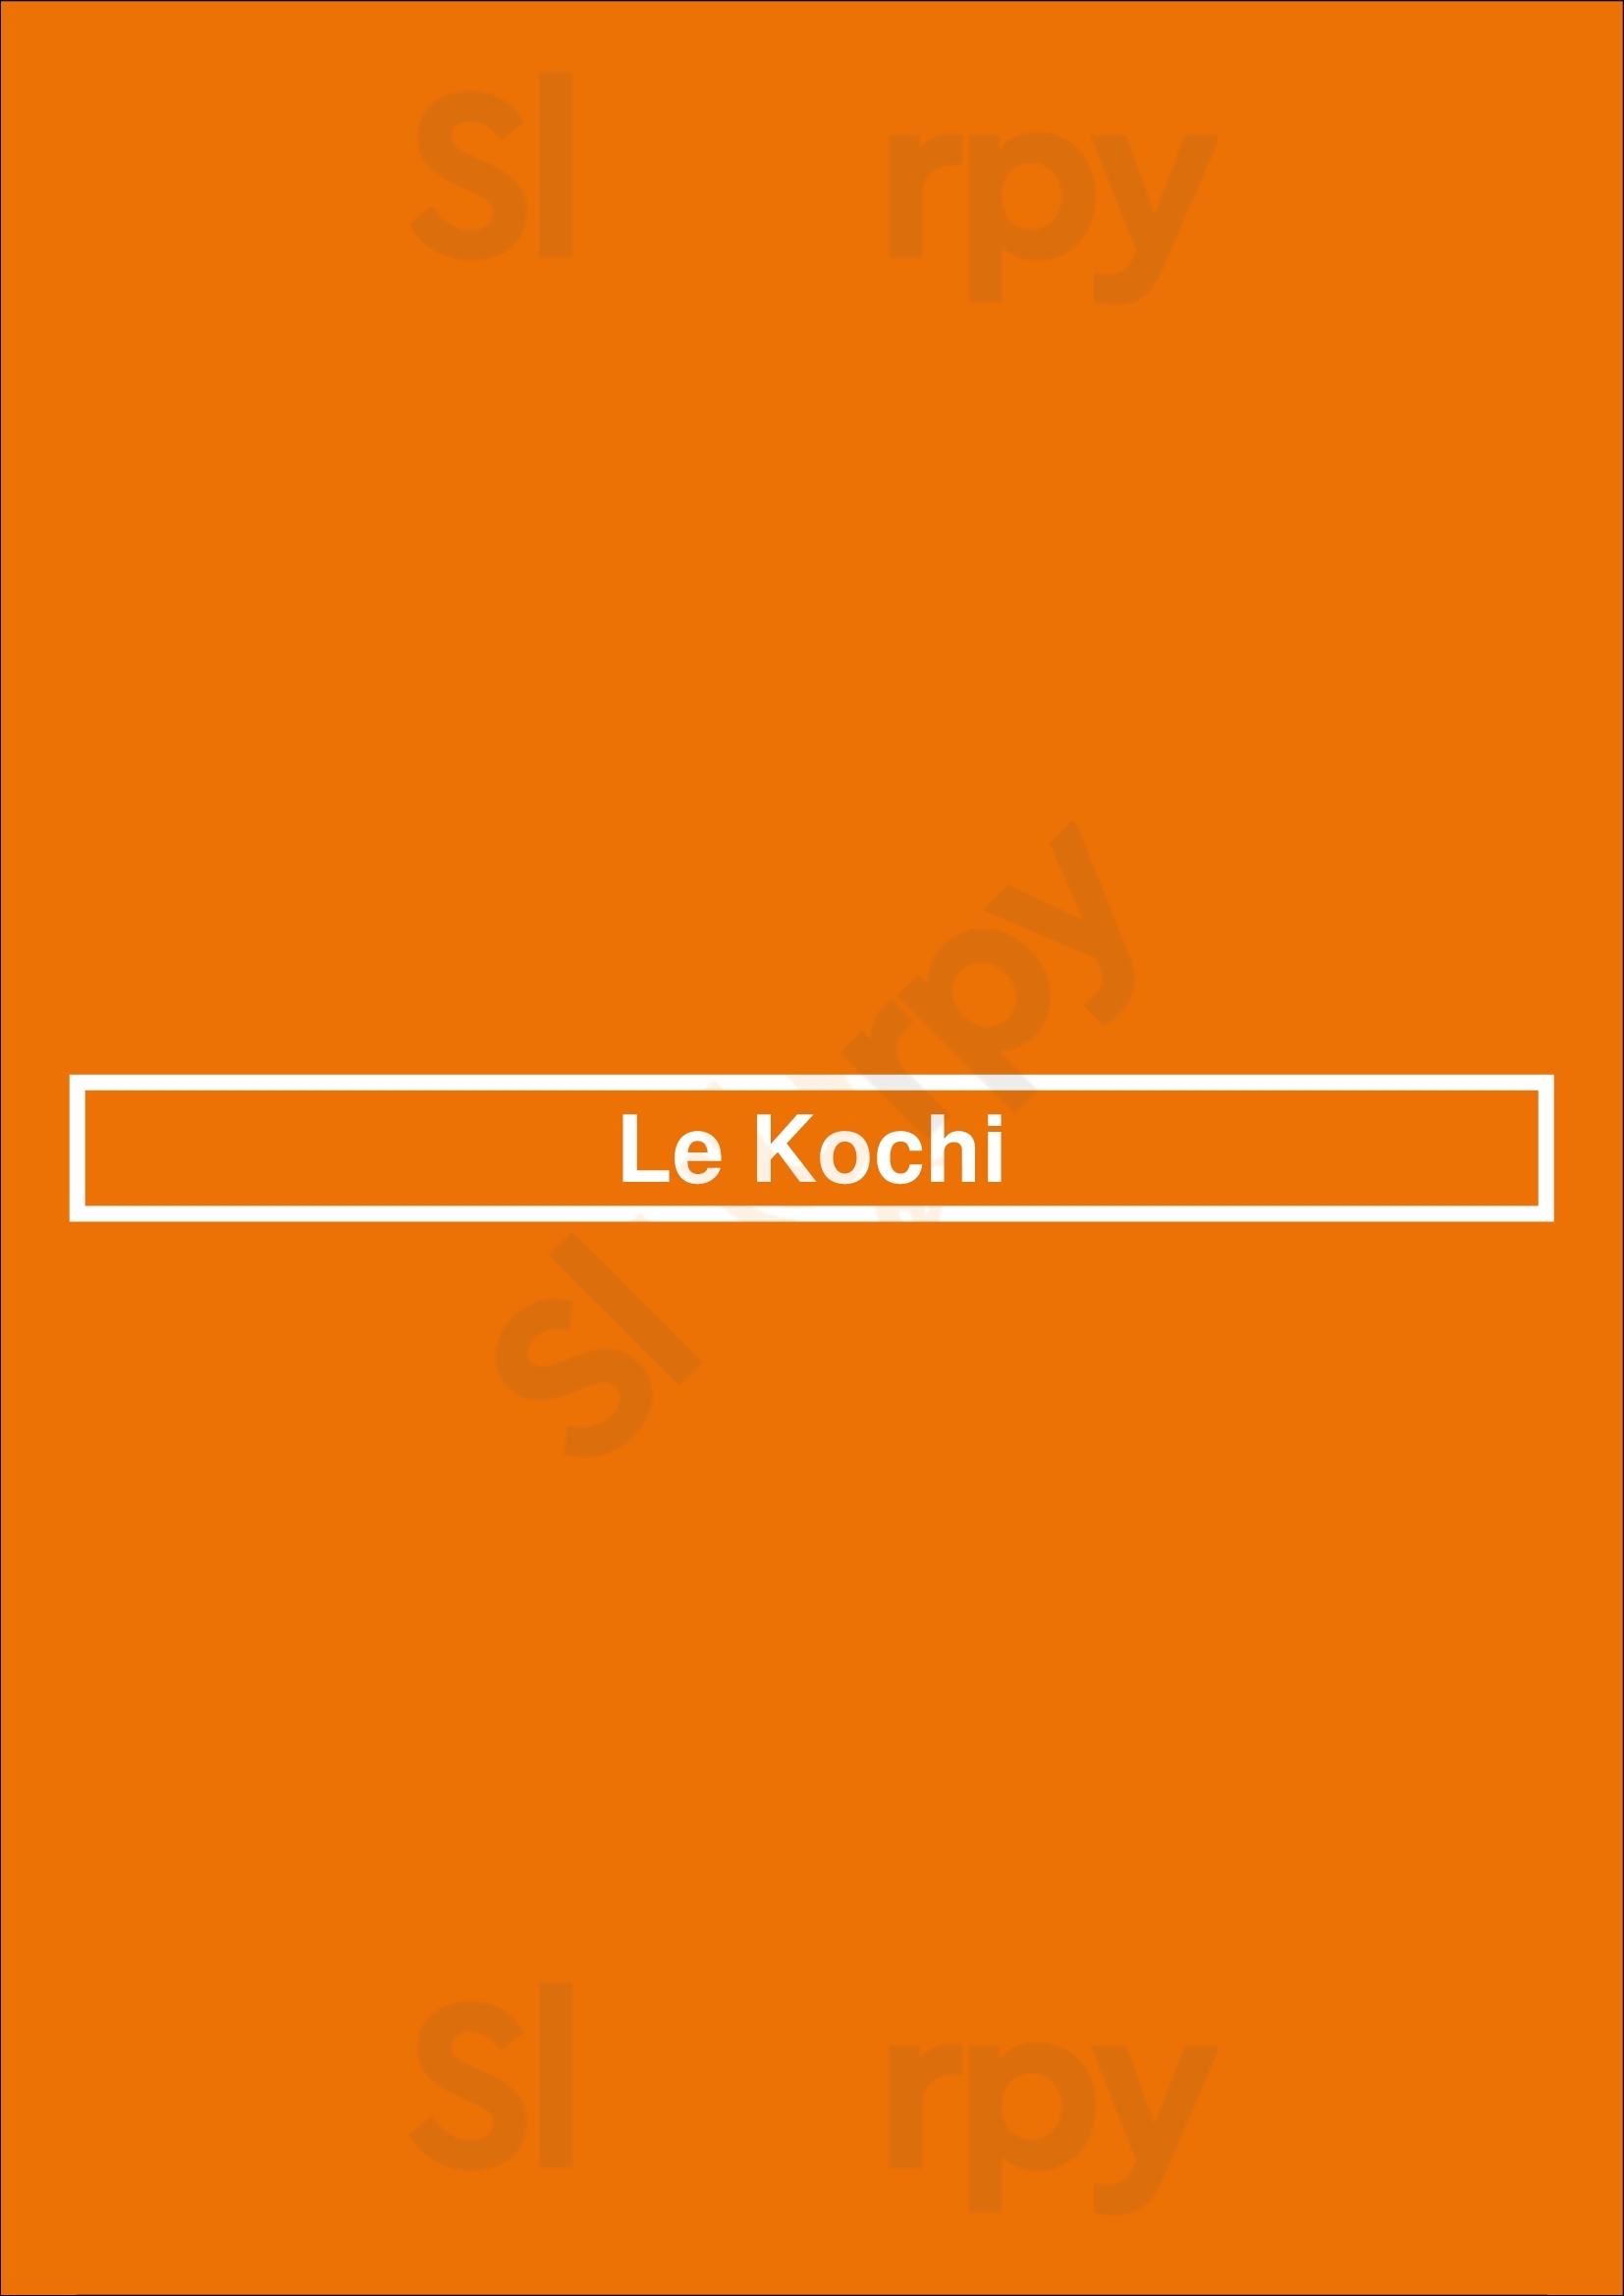 Le Kochi Mississauga Menu - 1